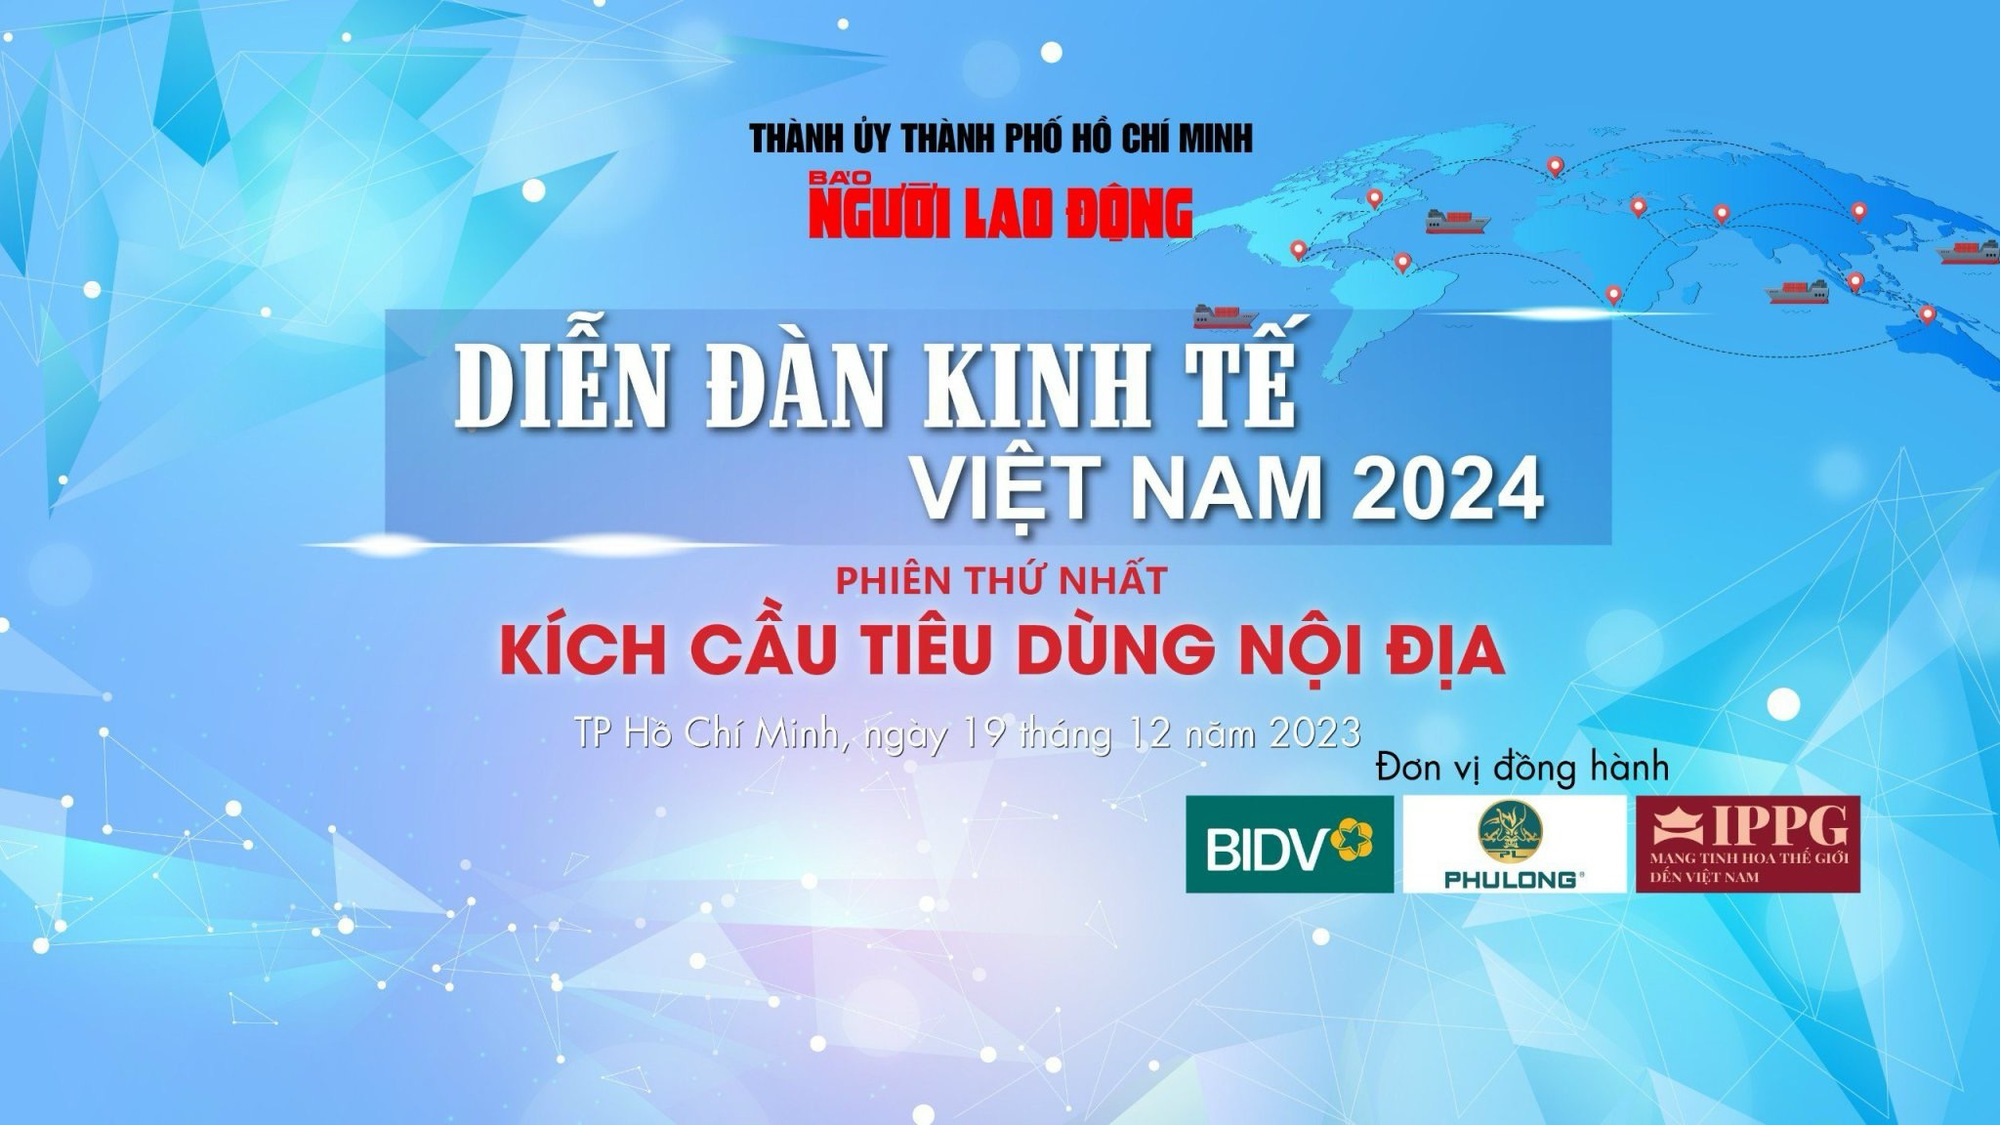 Diễn đàn Kinh tế Việt Nam 2024: Đẩy mạnh giảm thuế để kích cầu- Ảnh 1.